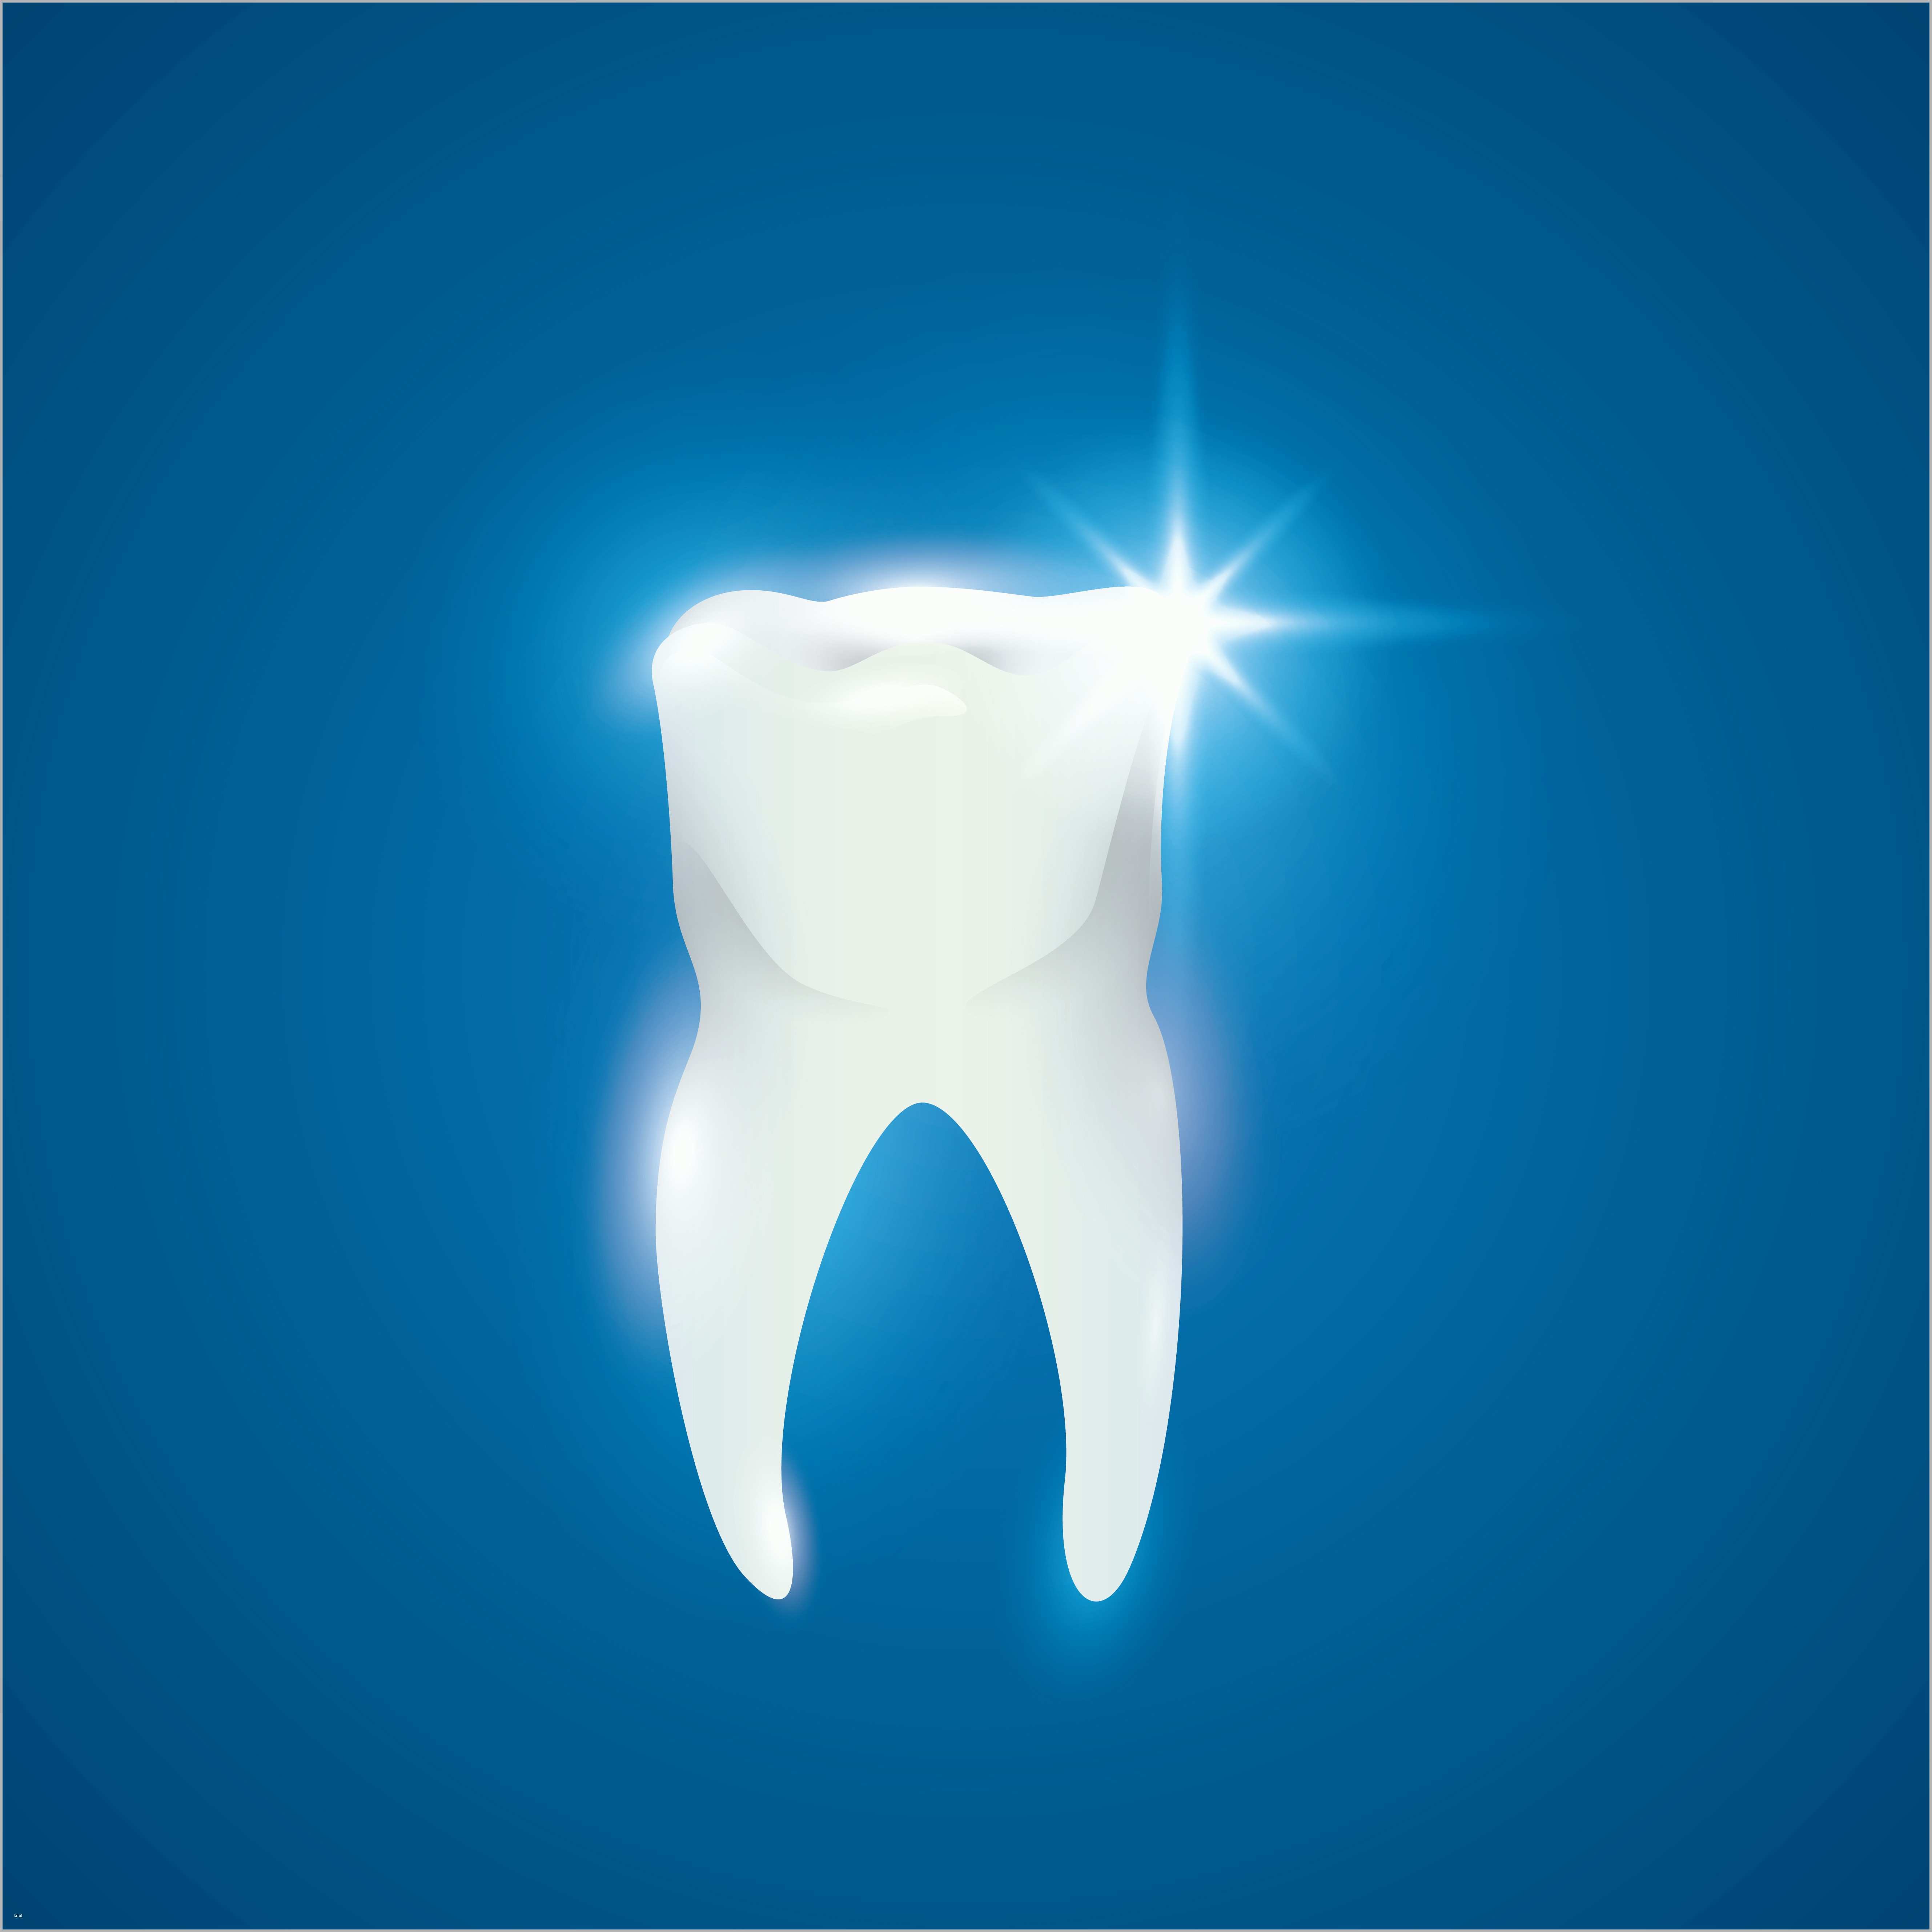 Beeindruckend Qualitätsmanagement In Der Zahnarztpraxis Teil 2 – Chance